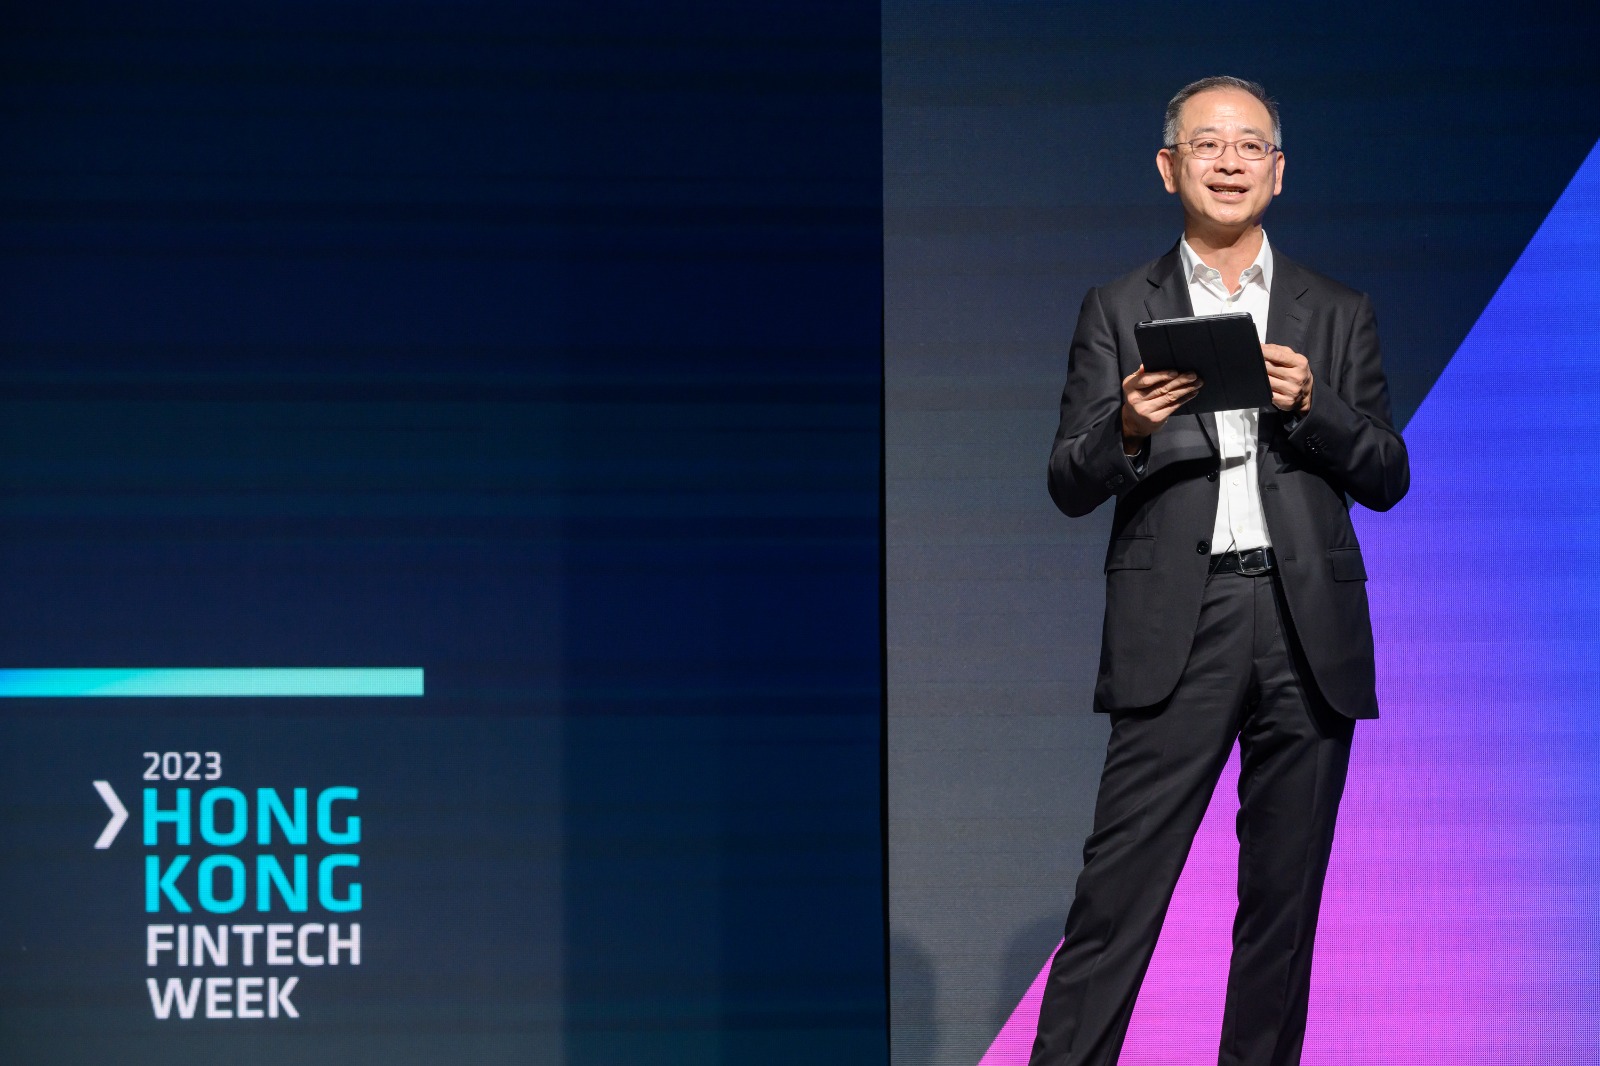 香港金融管理局总裁余伟文于香港金融科技周2023发表开幕主题演讲。